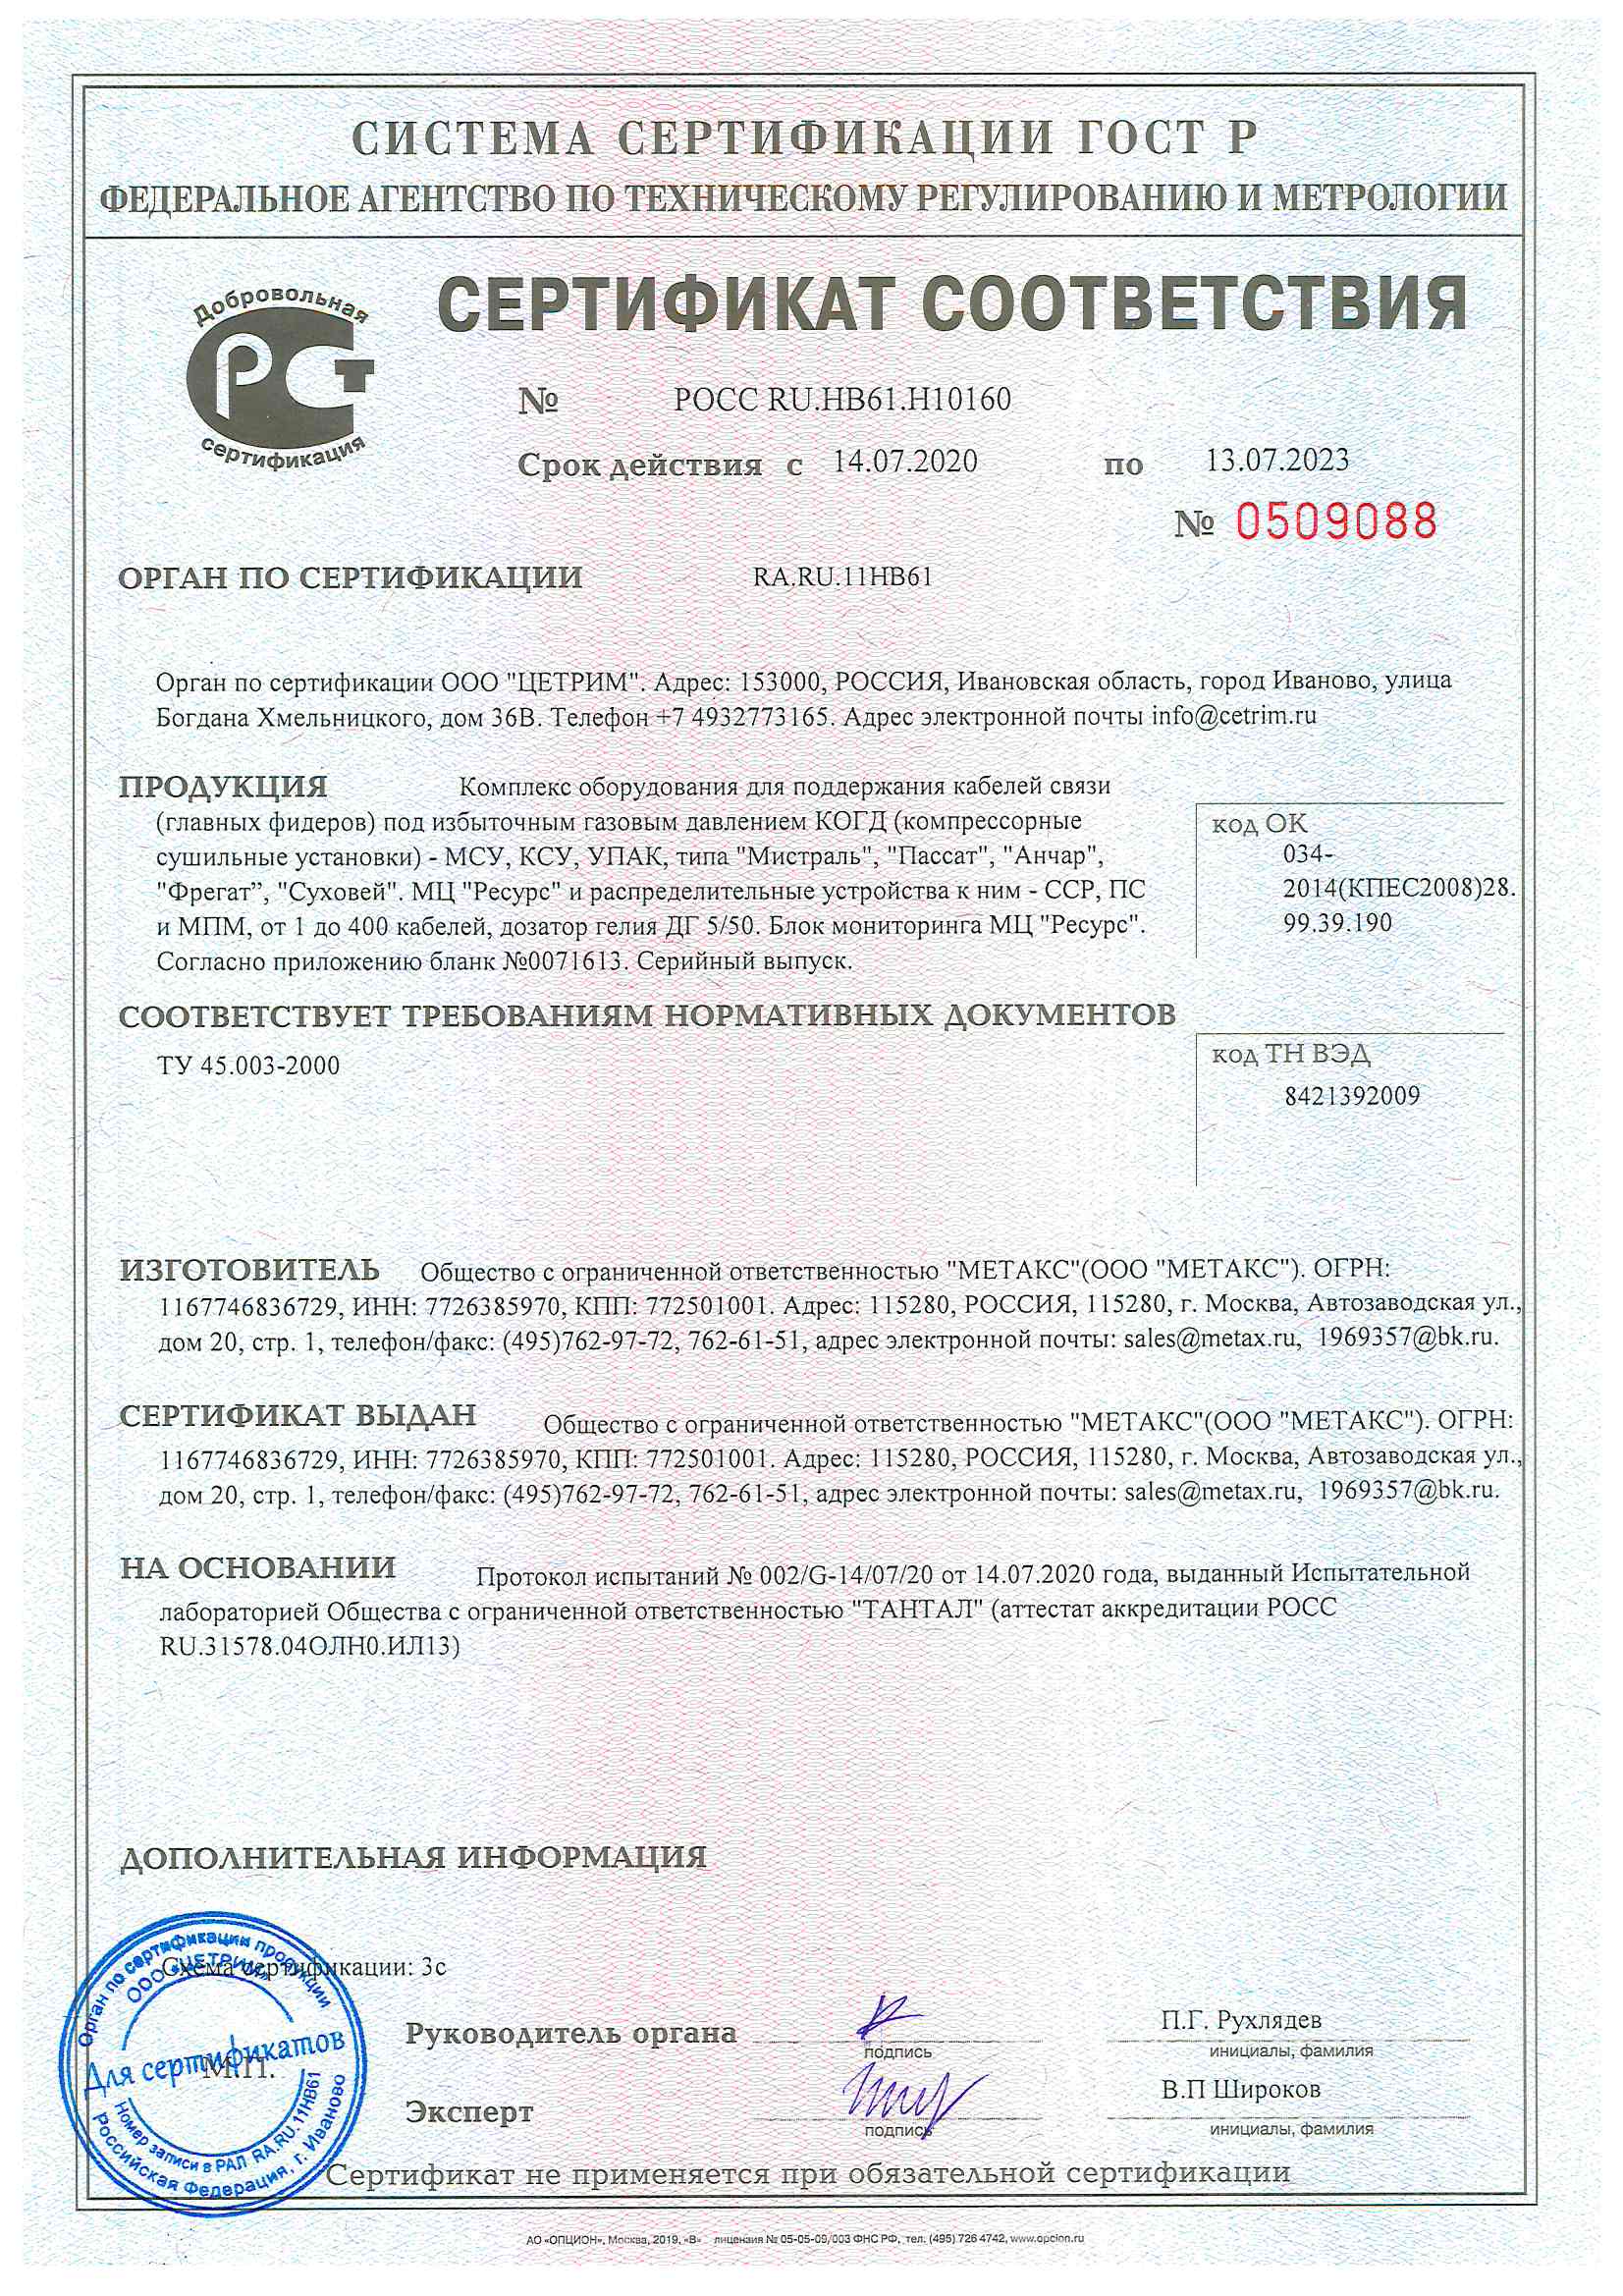 Сертификат на КСУ, МСУ, УПАК, Ресурс с 14.07.2020г.